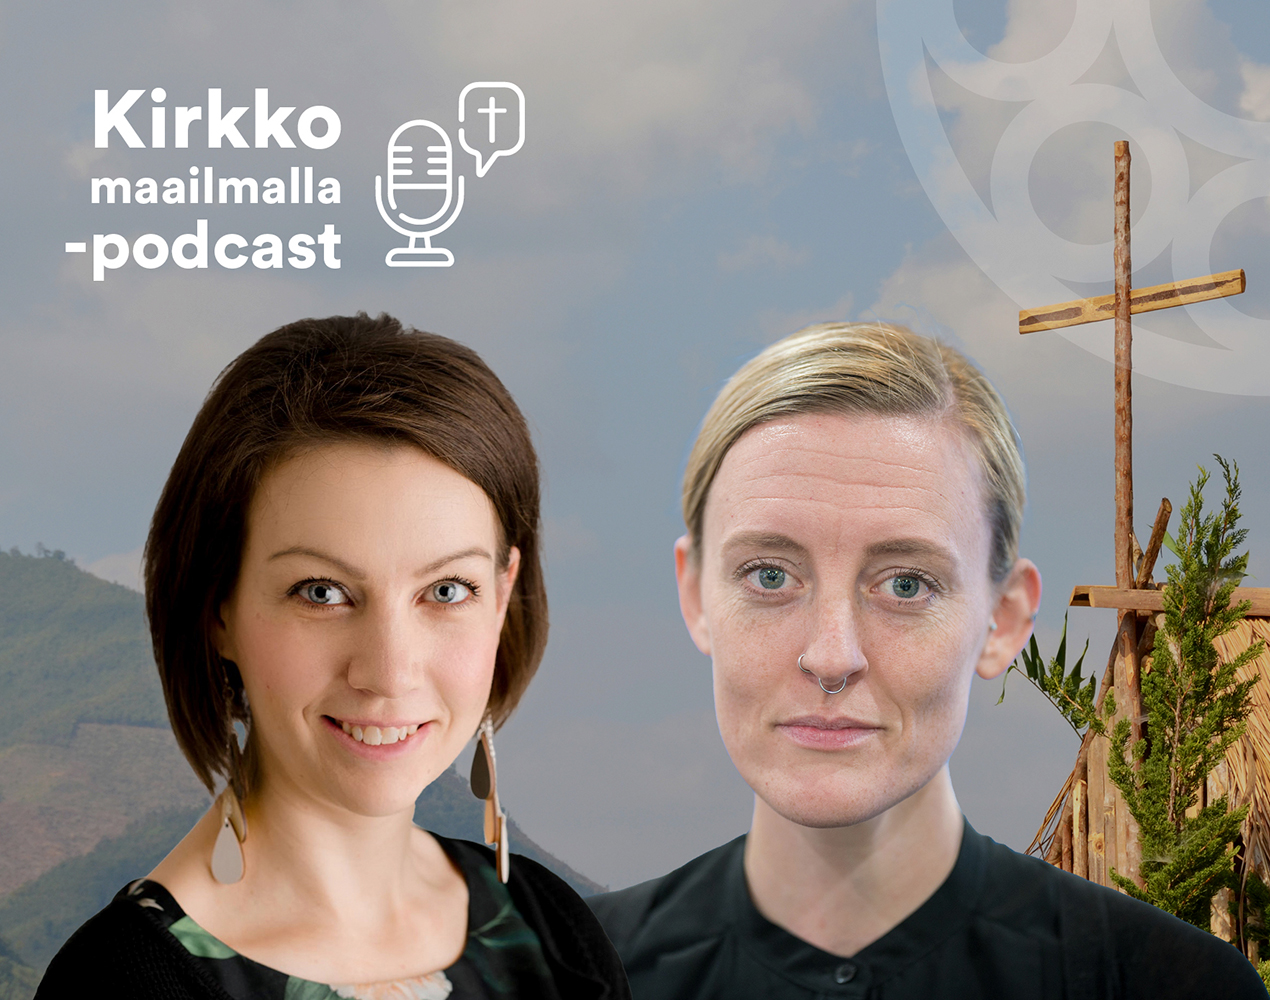 Kirkko maailmalla -podcastissa haastateltavina Elina Siukonen ja Savanna Sullivan.